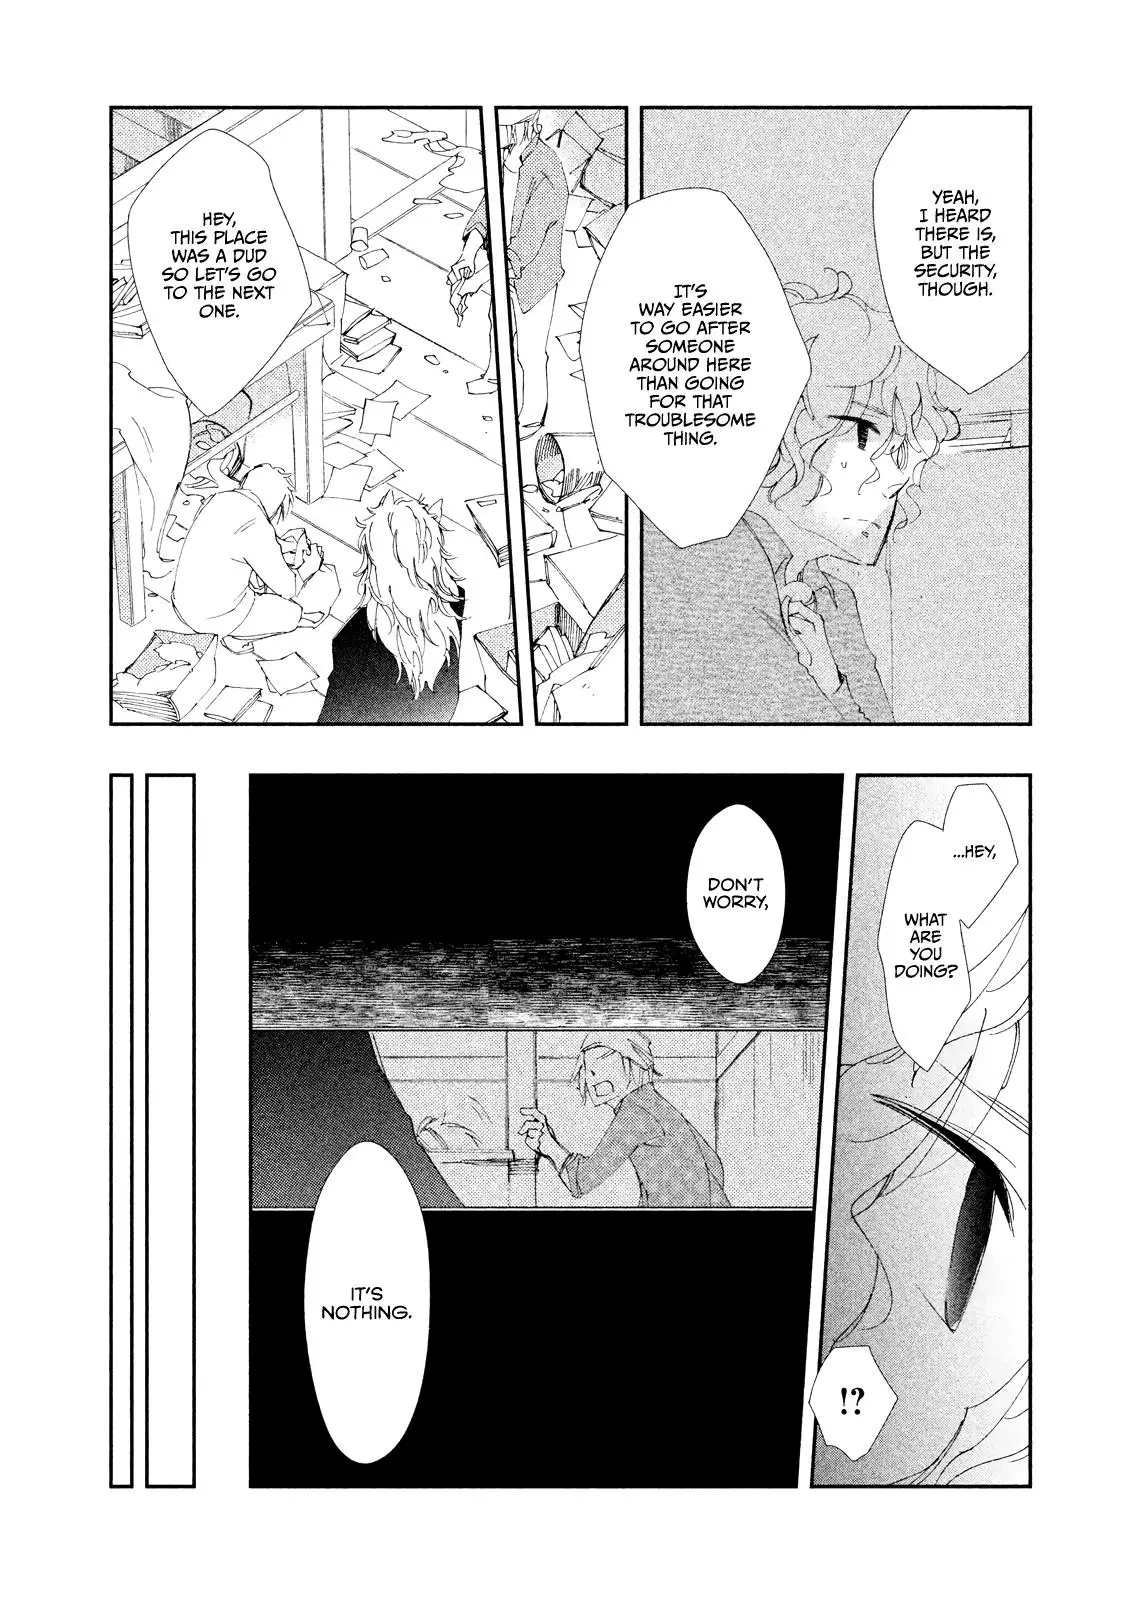 Amegashi - 6 page 33-0e717e29